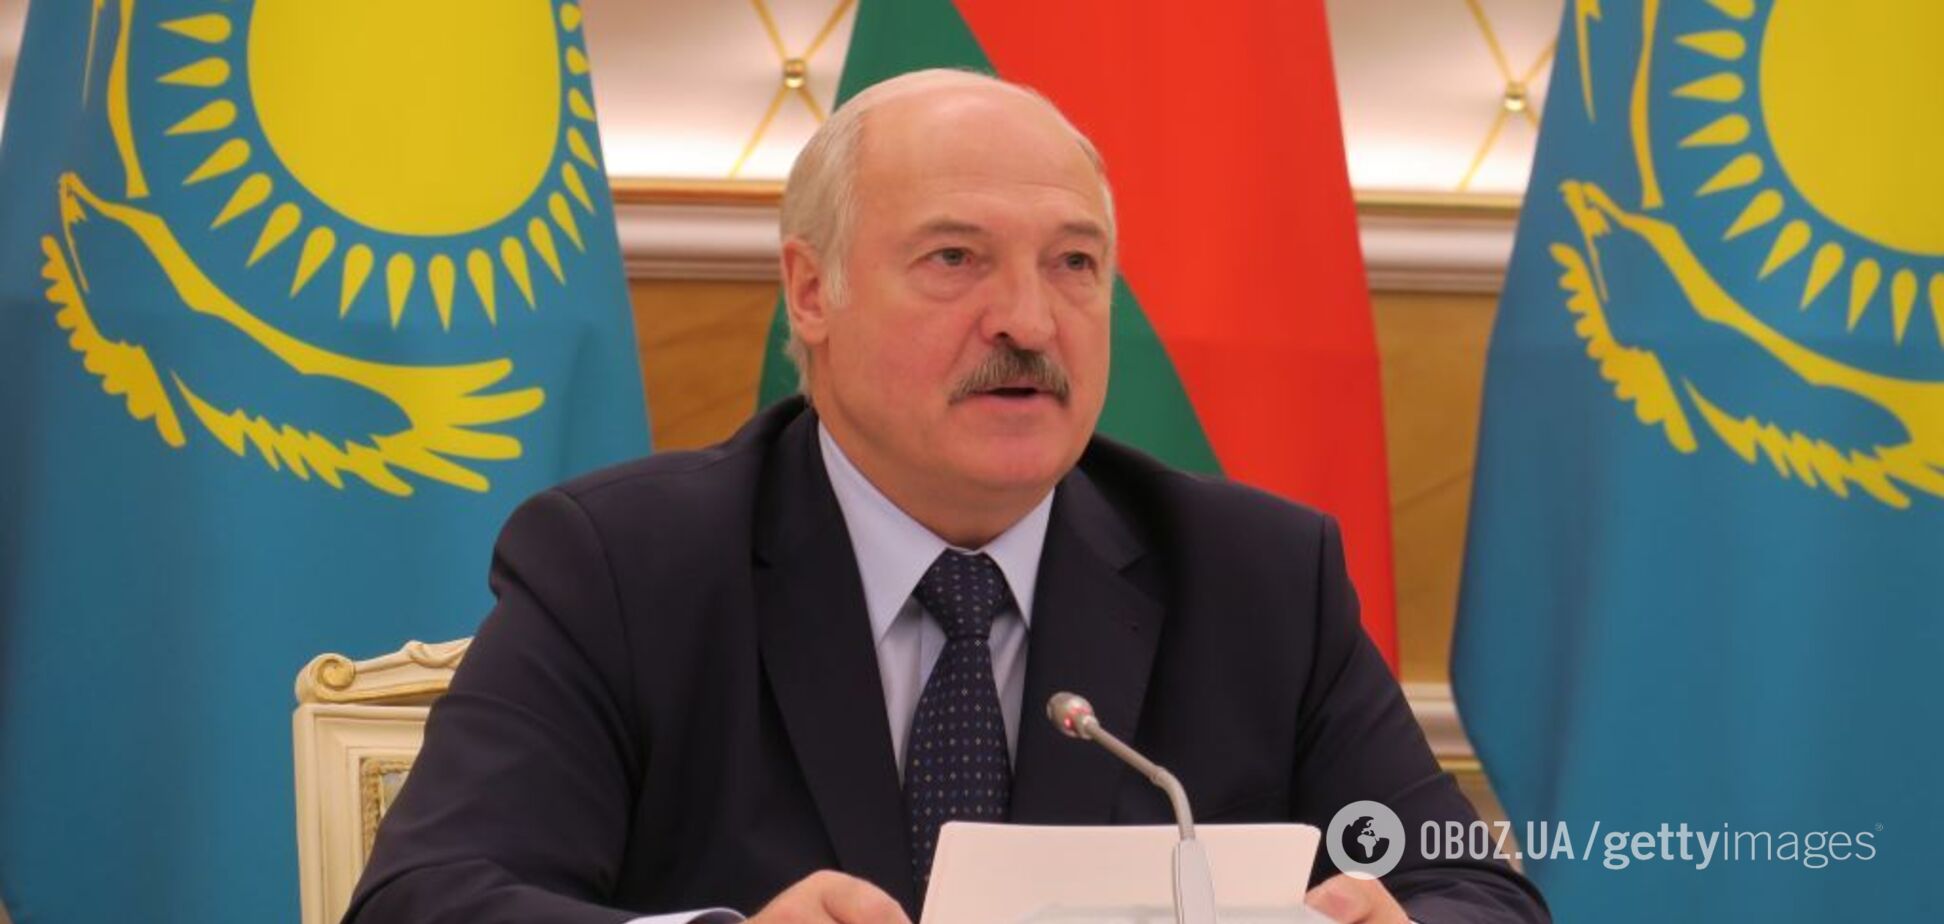 Объединение России и Беларуси: Лукашенко предложили пойти украинским путем